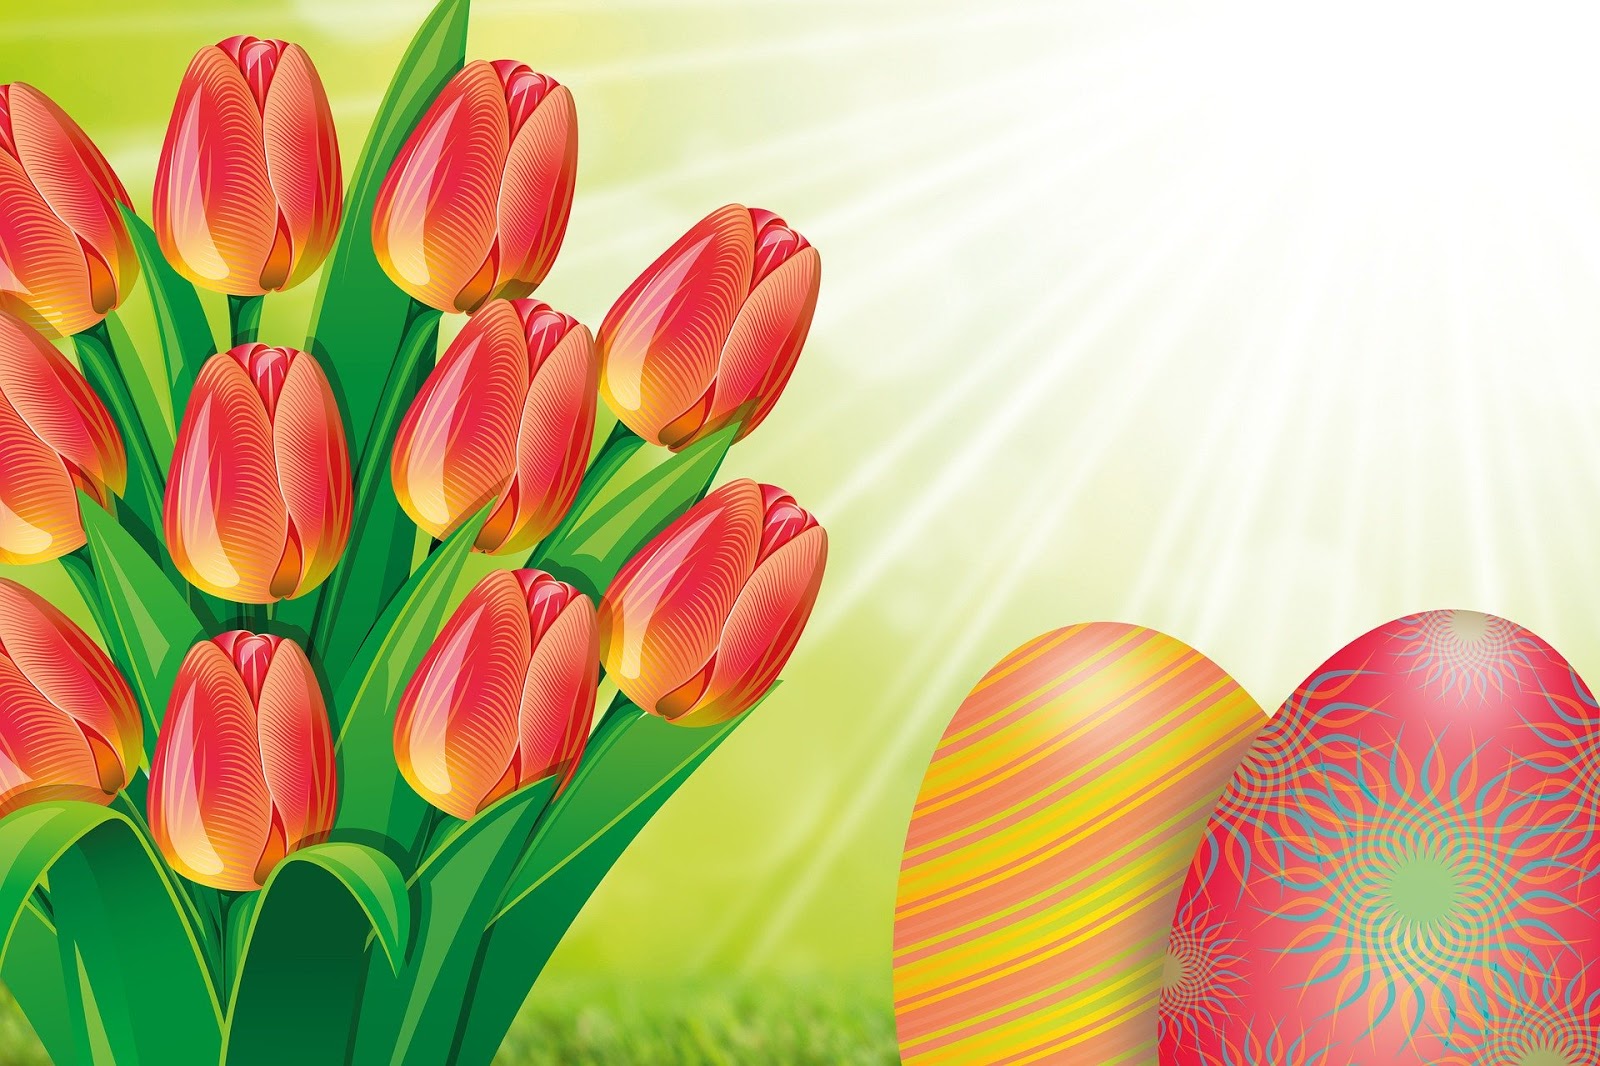  bunga tulip juga salah satu jenis bunga yang terkenal di indonesia 15+ Gambar Bunga Tulip Indah